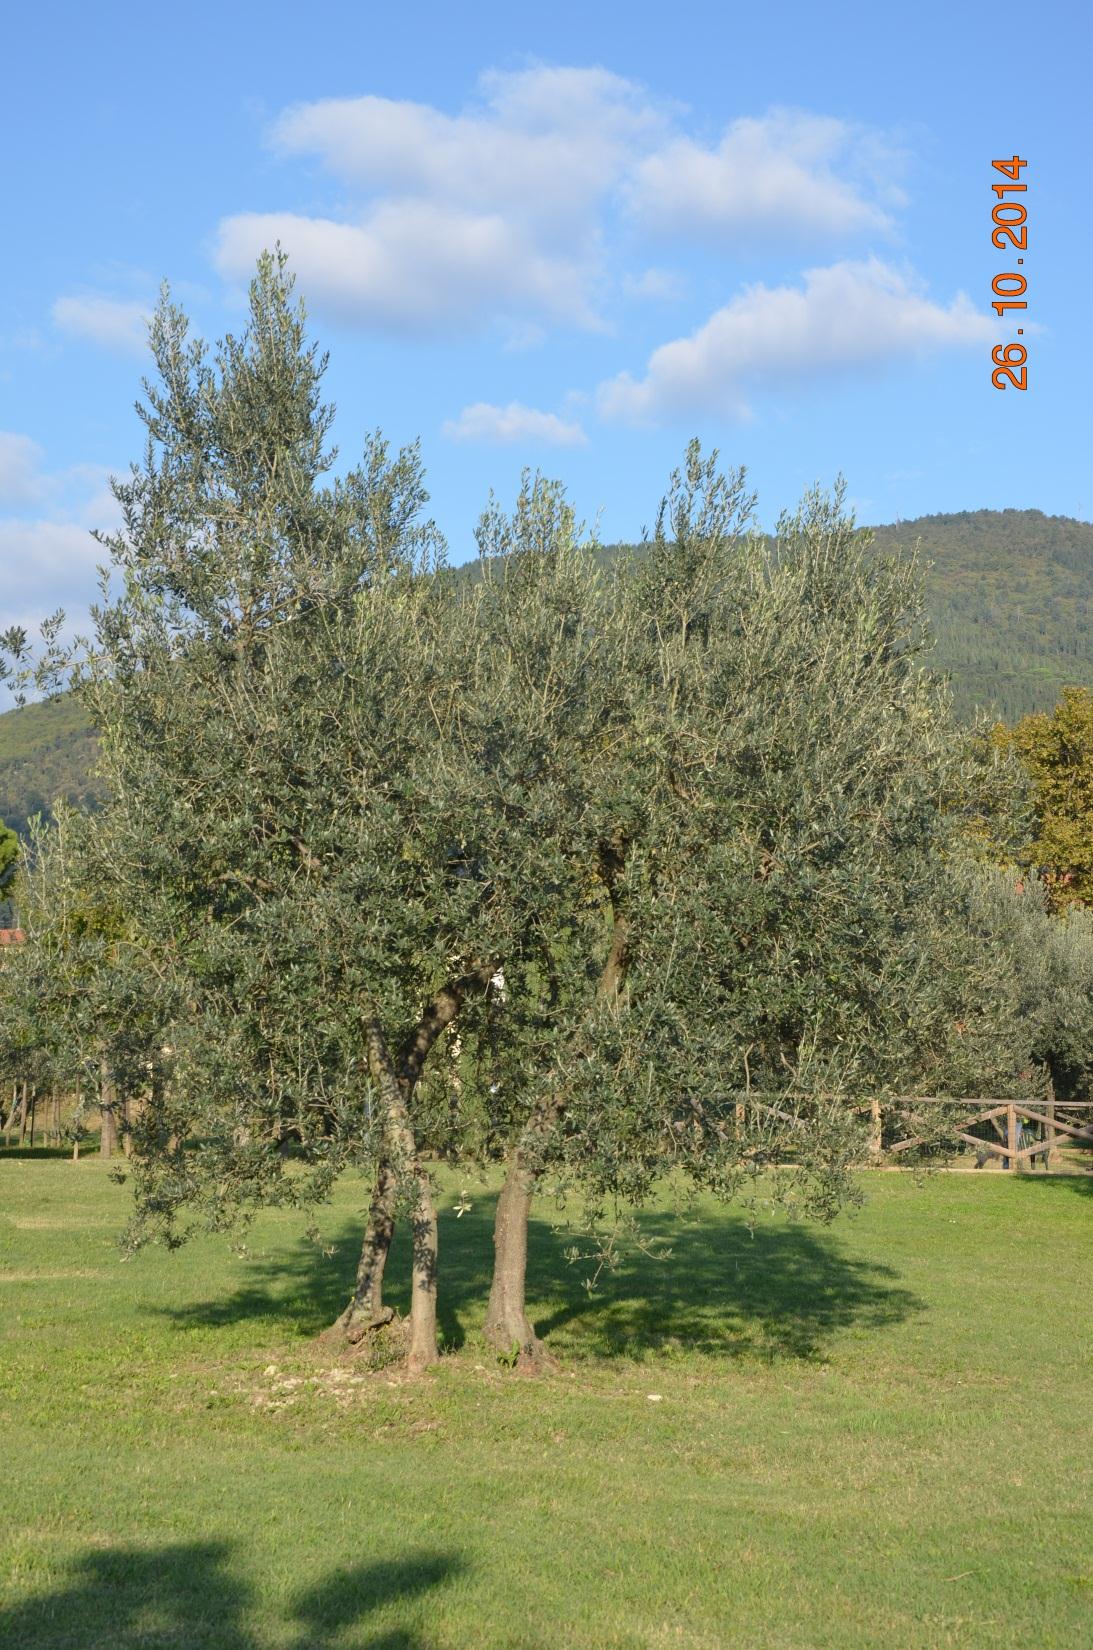 Albero olivo in parco pubblico. Si notano i 3 rami principali.